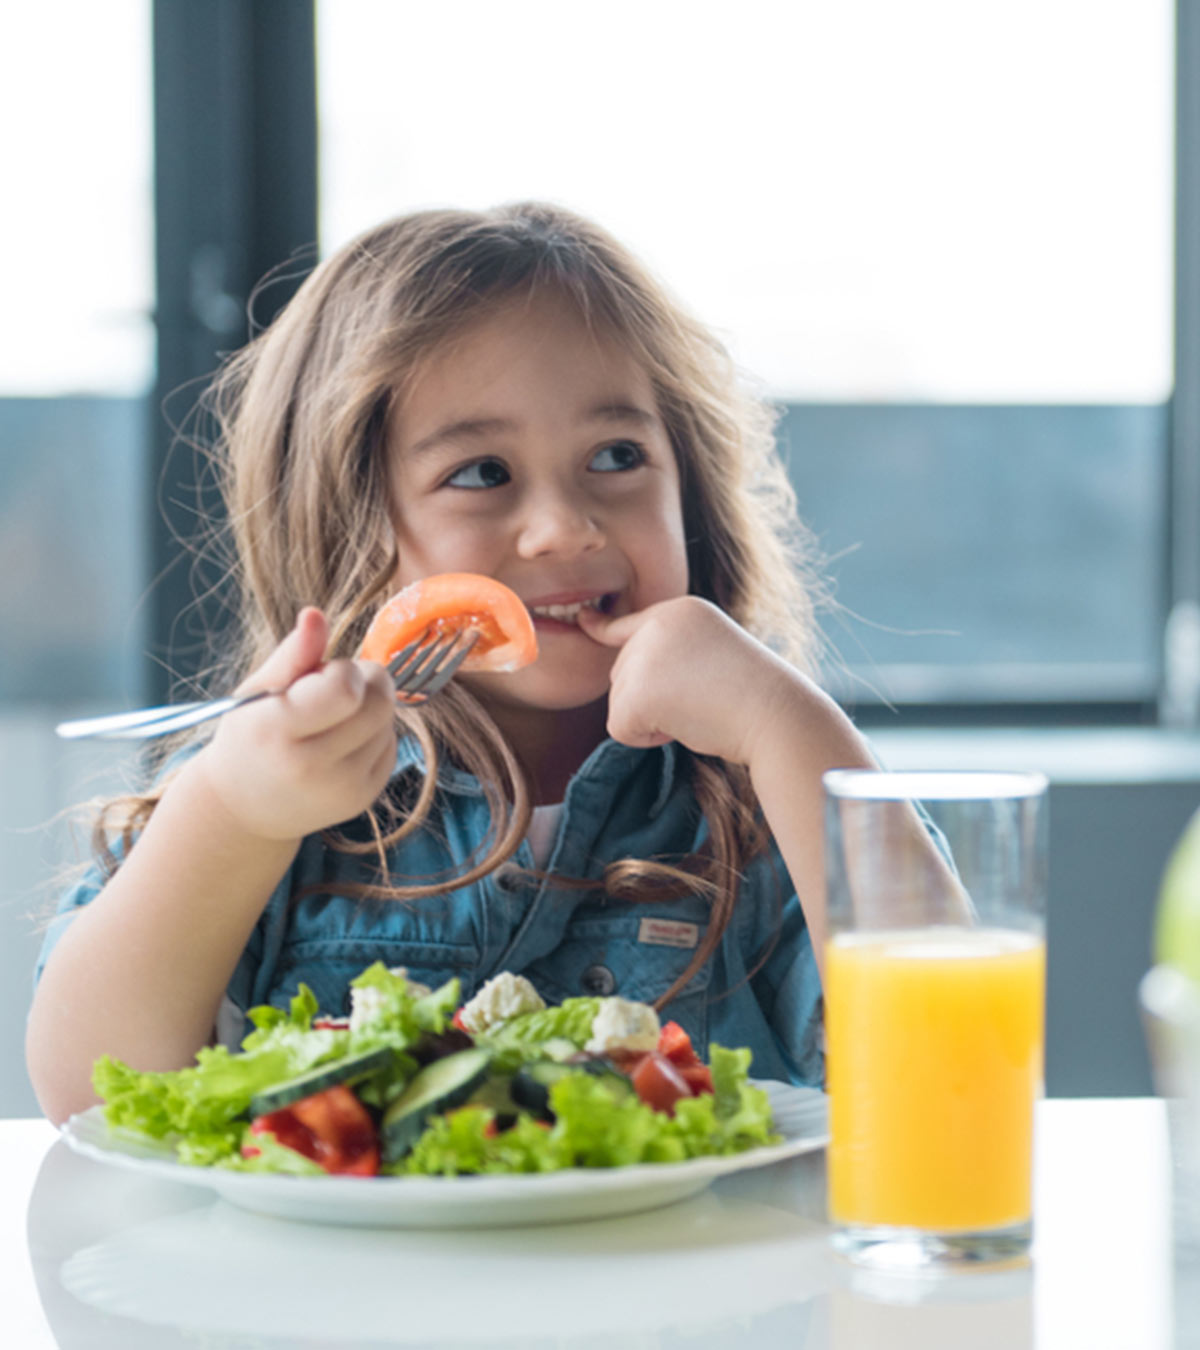 healthy kids eating